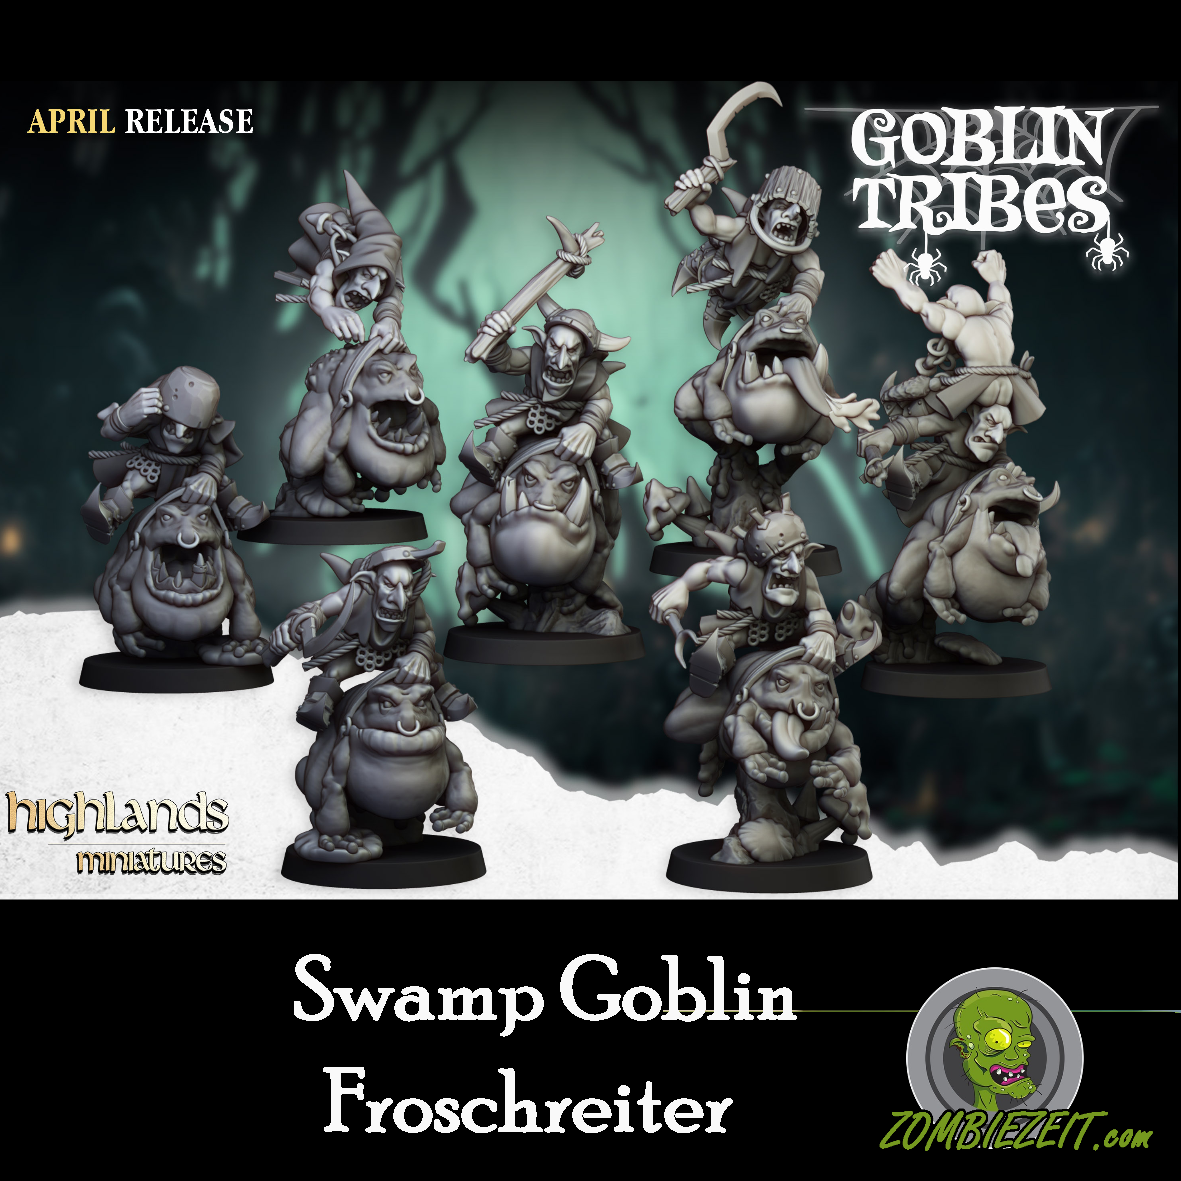 Swamp Goblin Froschreiter